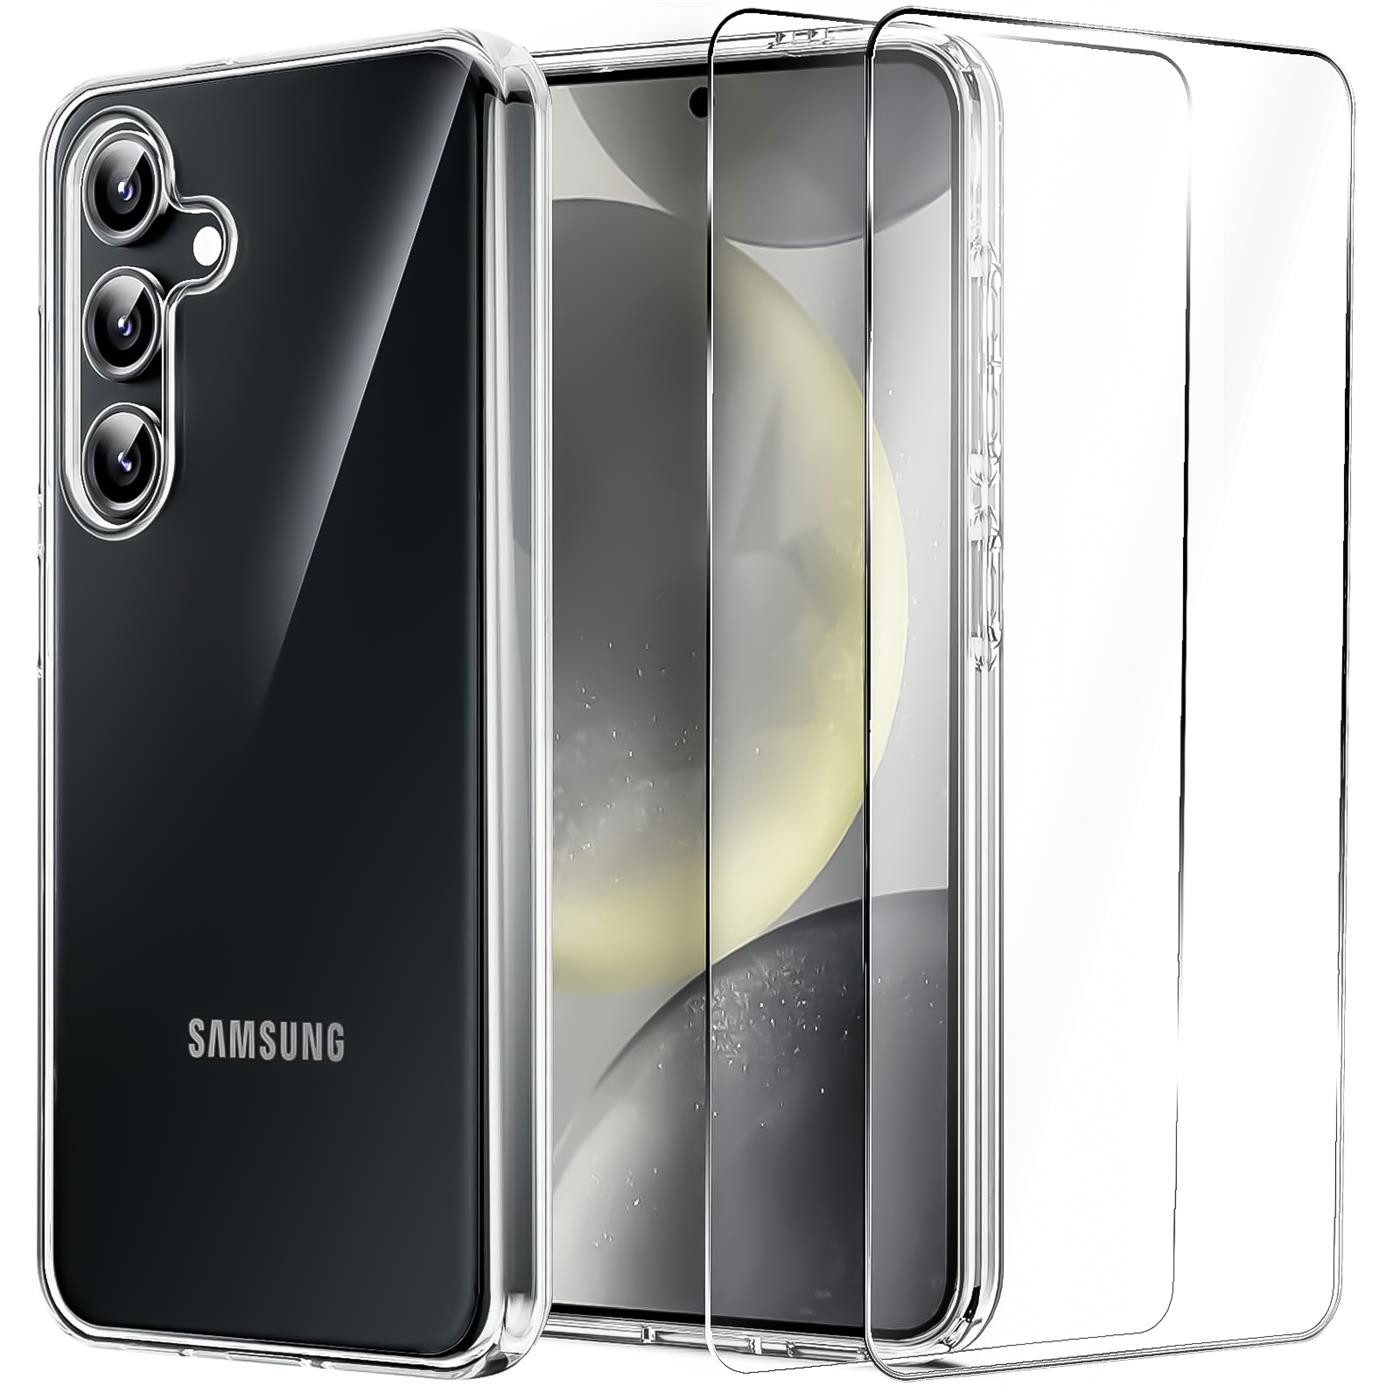 CoolGadget Handyhülle Transparent als 2in1 Schutz Cover Set für das Samsung Galaxy A6 5,6 Zoll, 2x 9H Glas Display Schutz Folie + 1x TPU Case Hülle für Galaxy A6